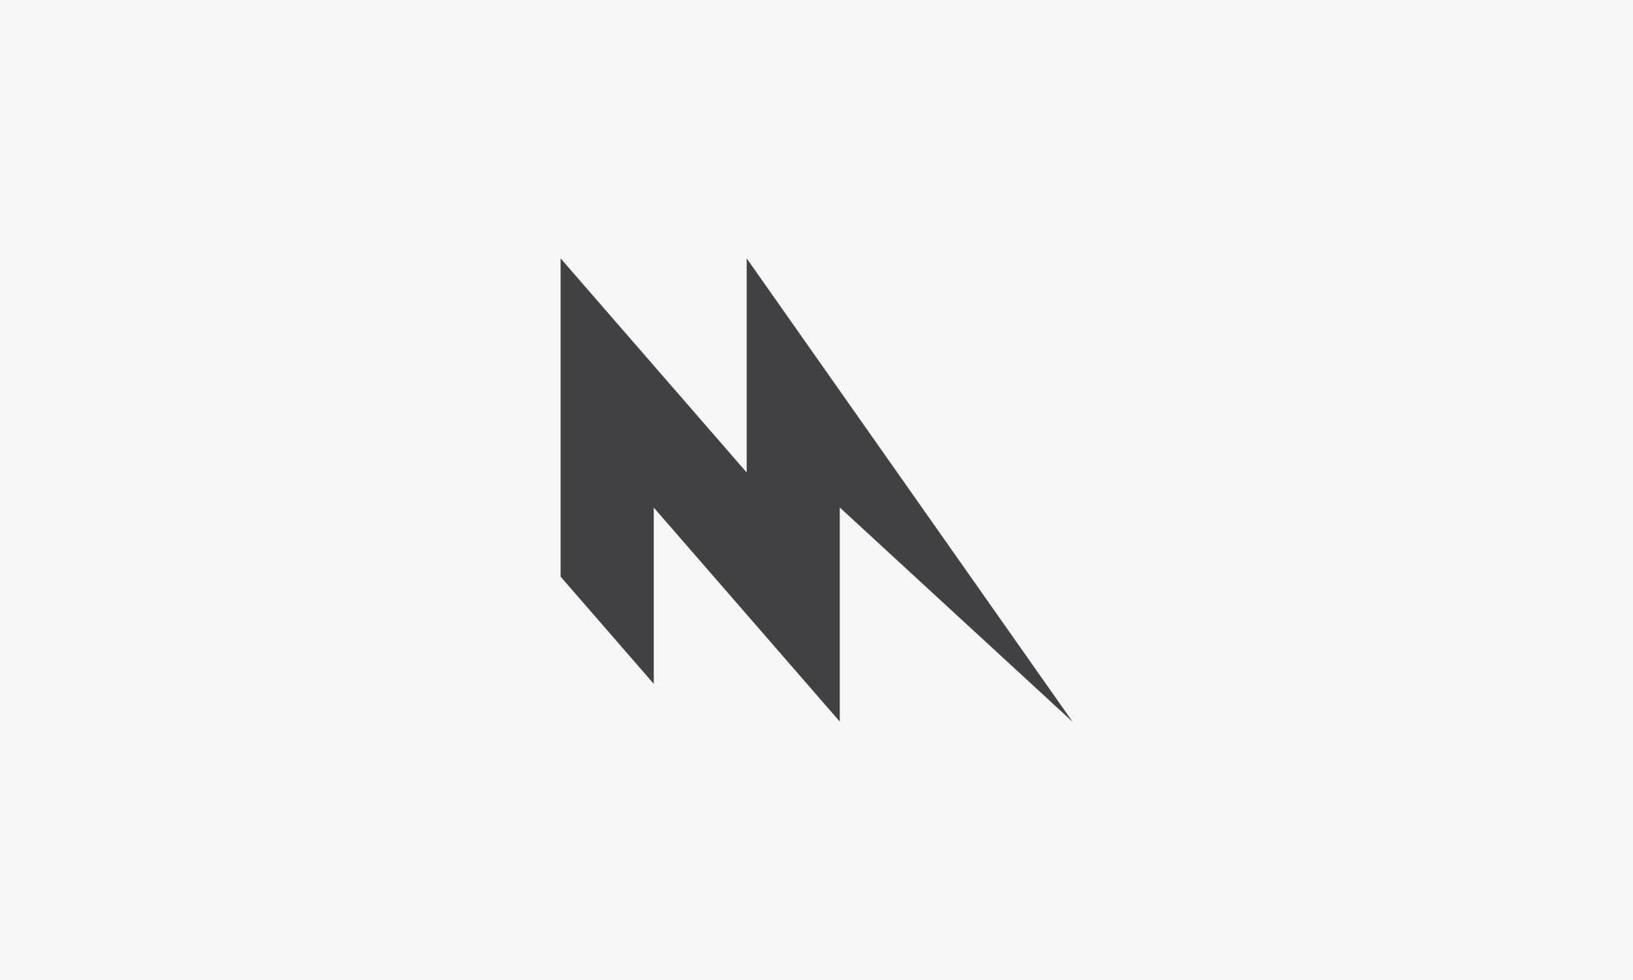 lightning letter M logo concept isolated on white background. vector